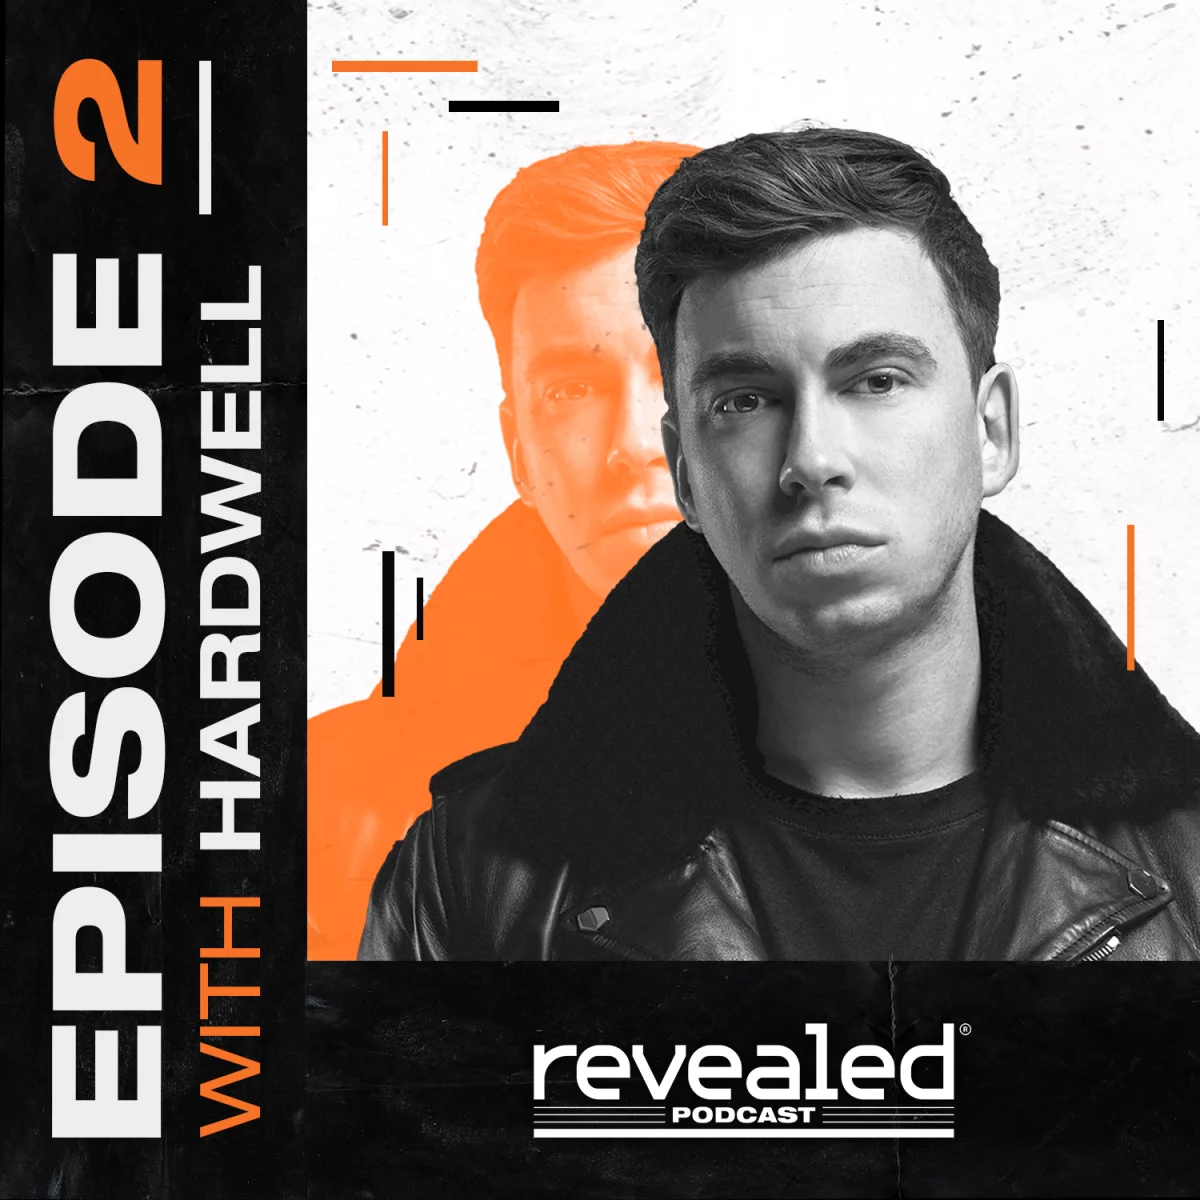 Revealed Podcast Episode 2: Hardwell - Hardwell⁠ Domeno⁠ 